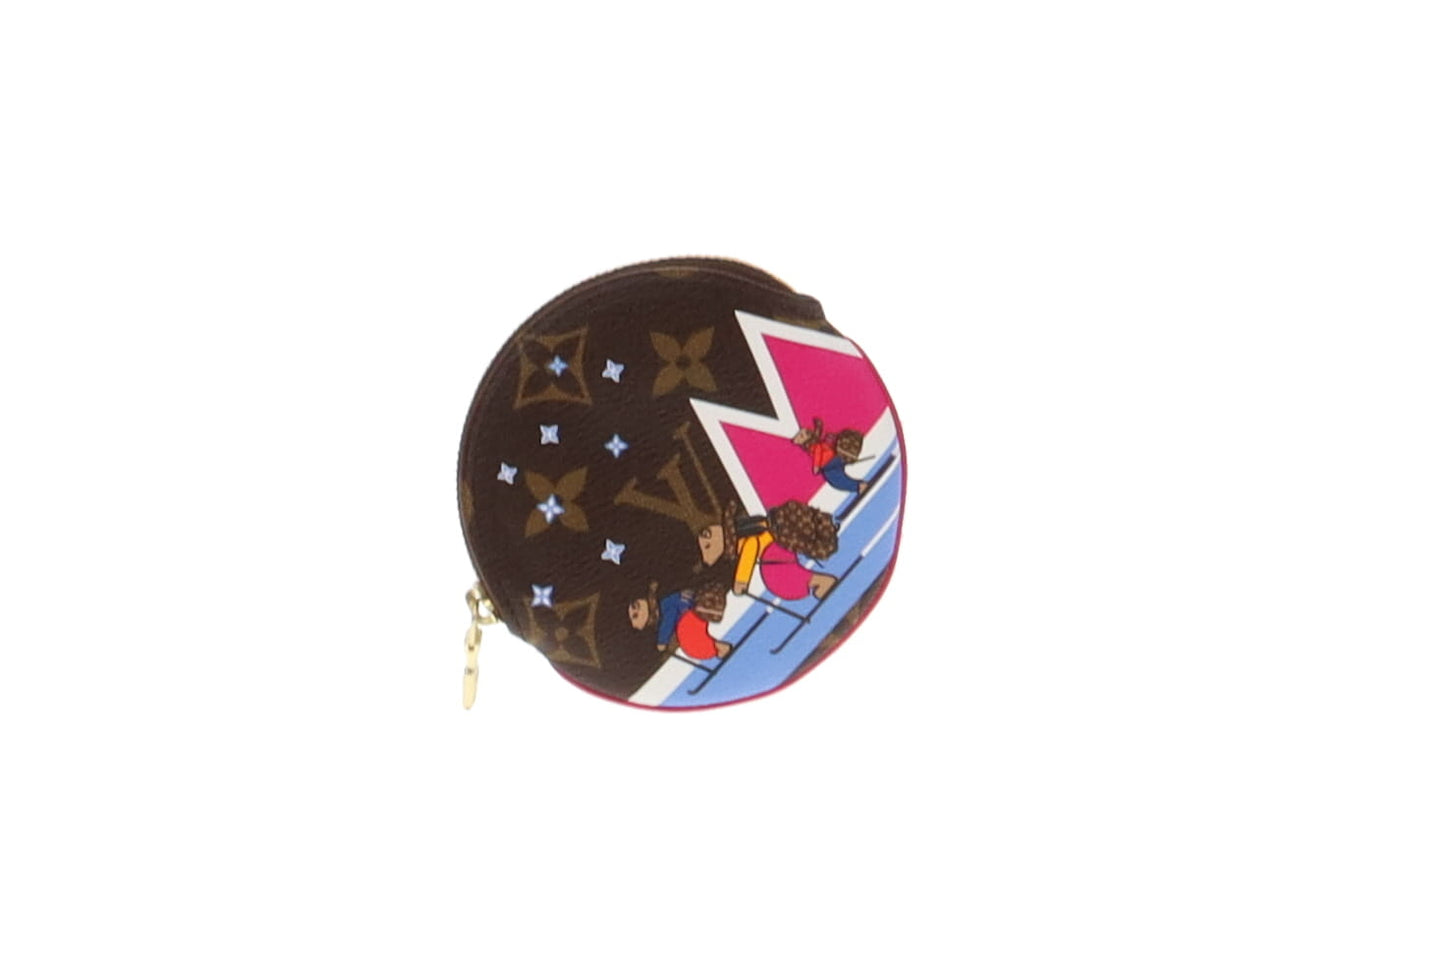 Louis Vuitton Bears on Skis Round Coin Purse Xmas Animation TA3188